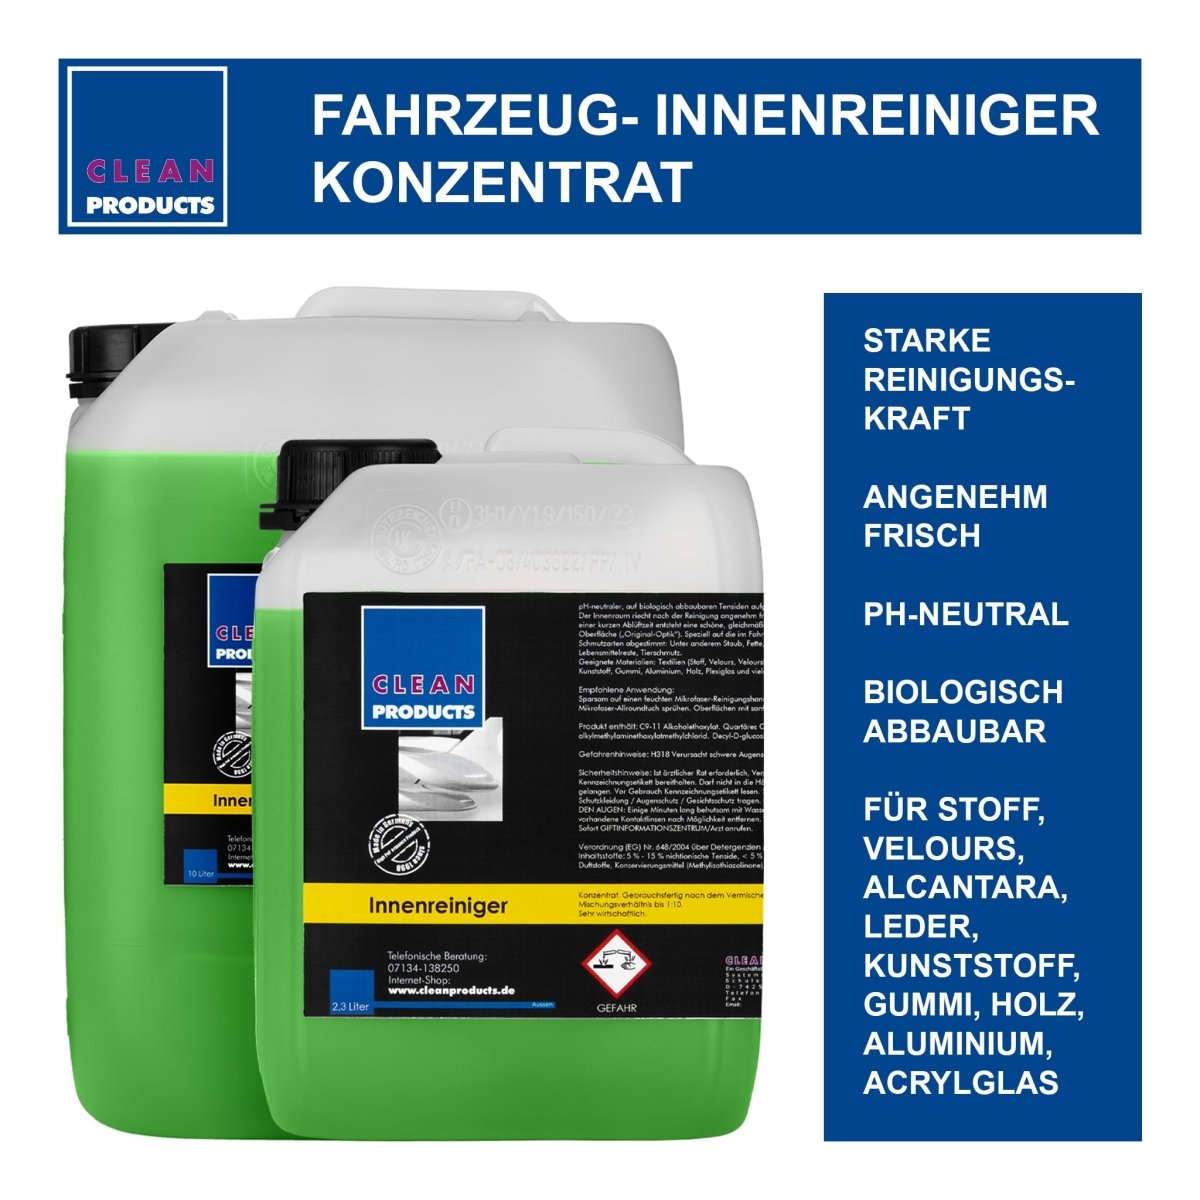 Fahrzeug-Innenreiniger Konzentrat - 4,8 Liter - CLEANPRODUCTS